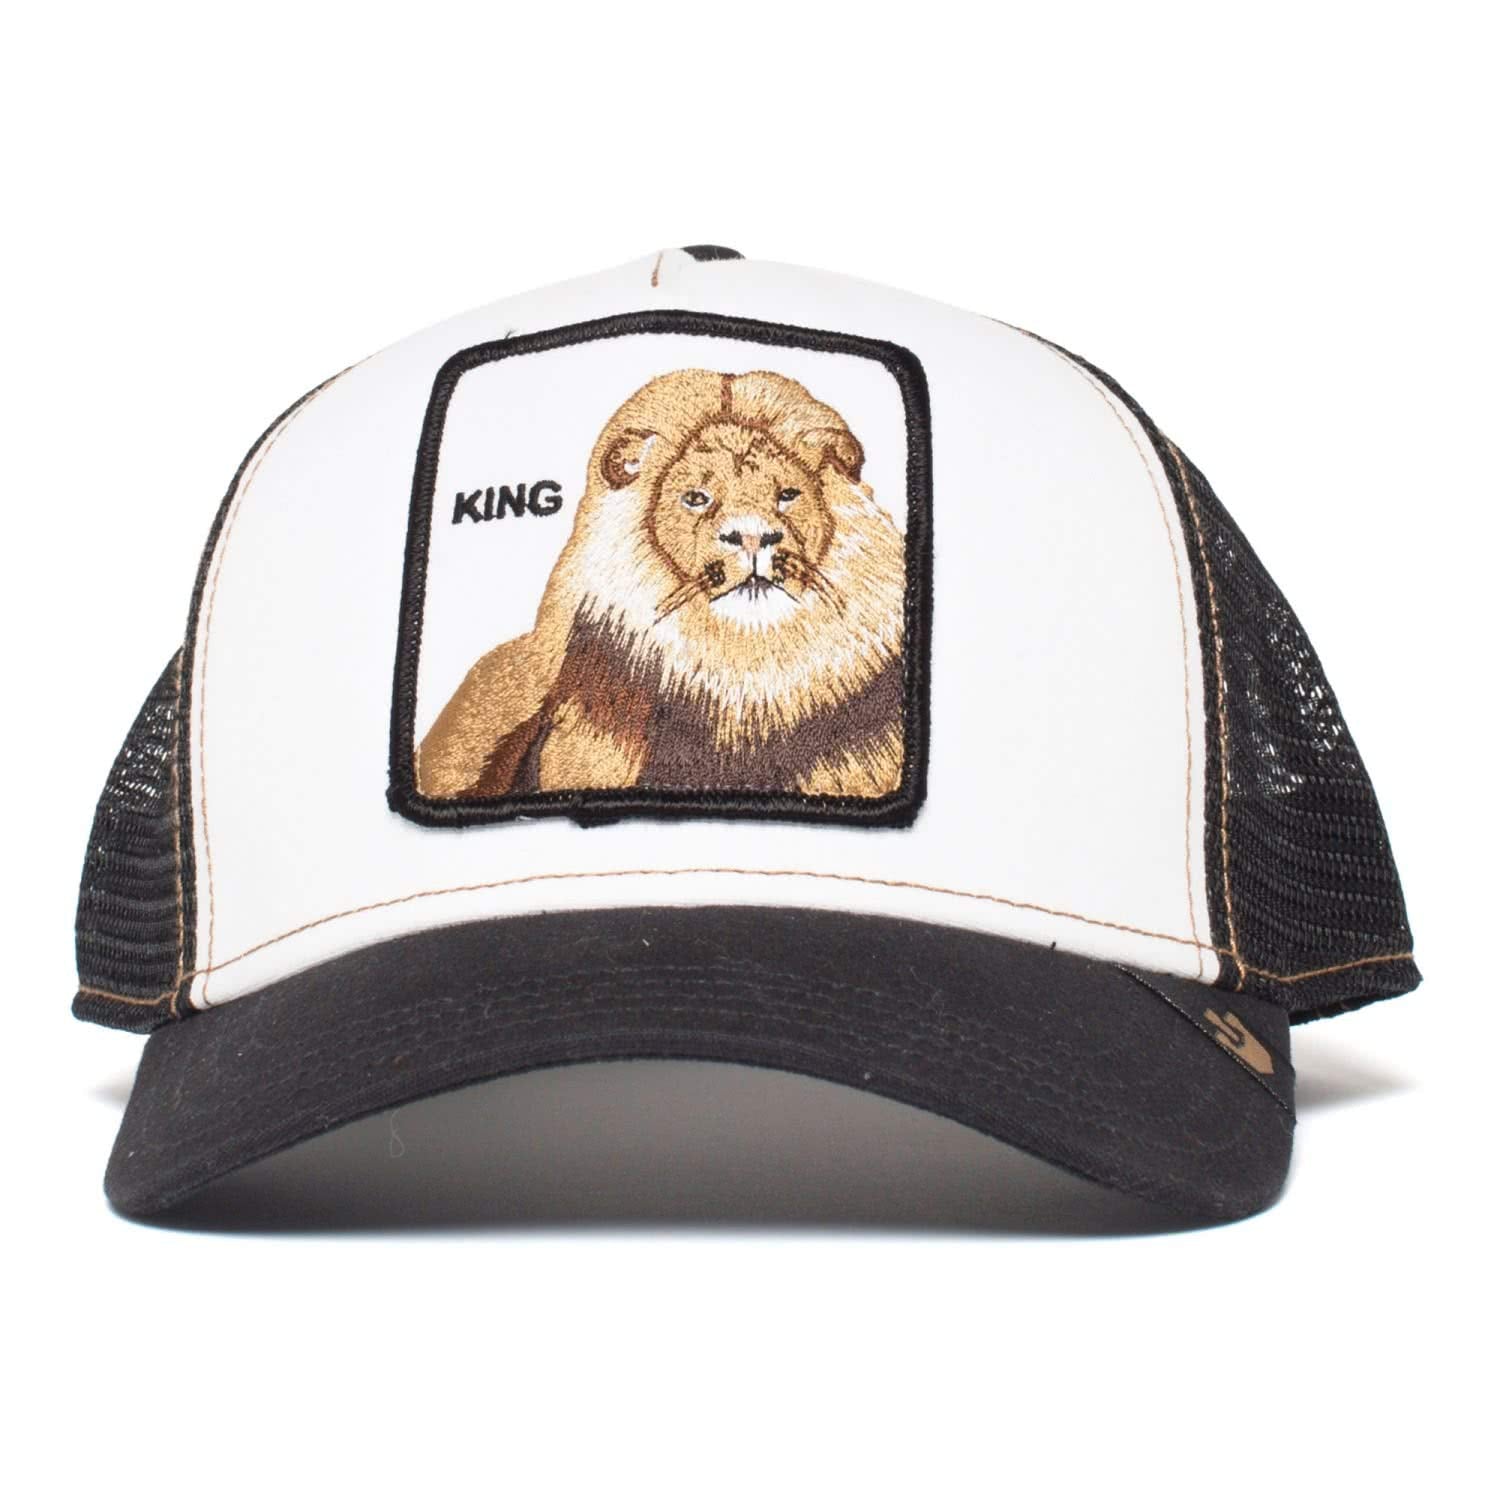 Goorin Bros King כובע מצחייה גורין אריה שחור לבן